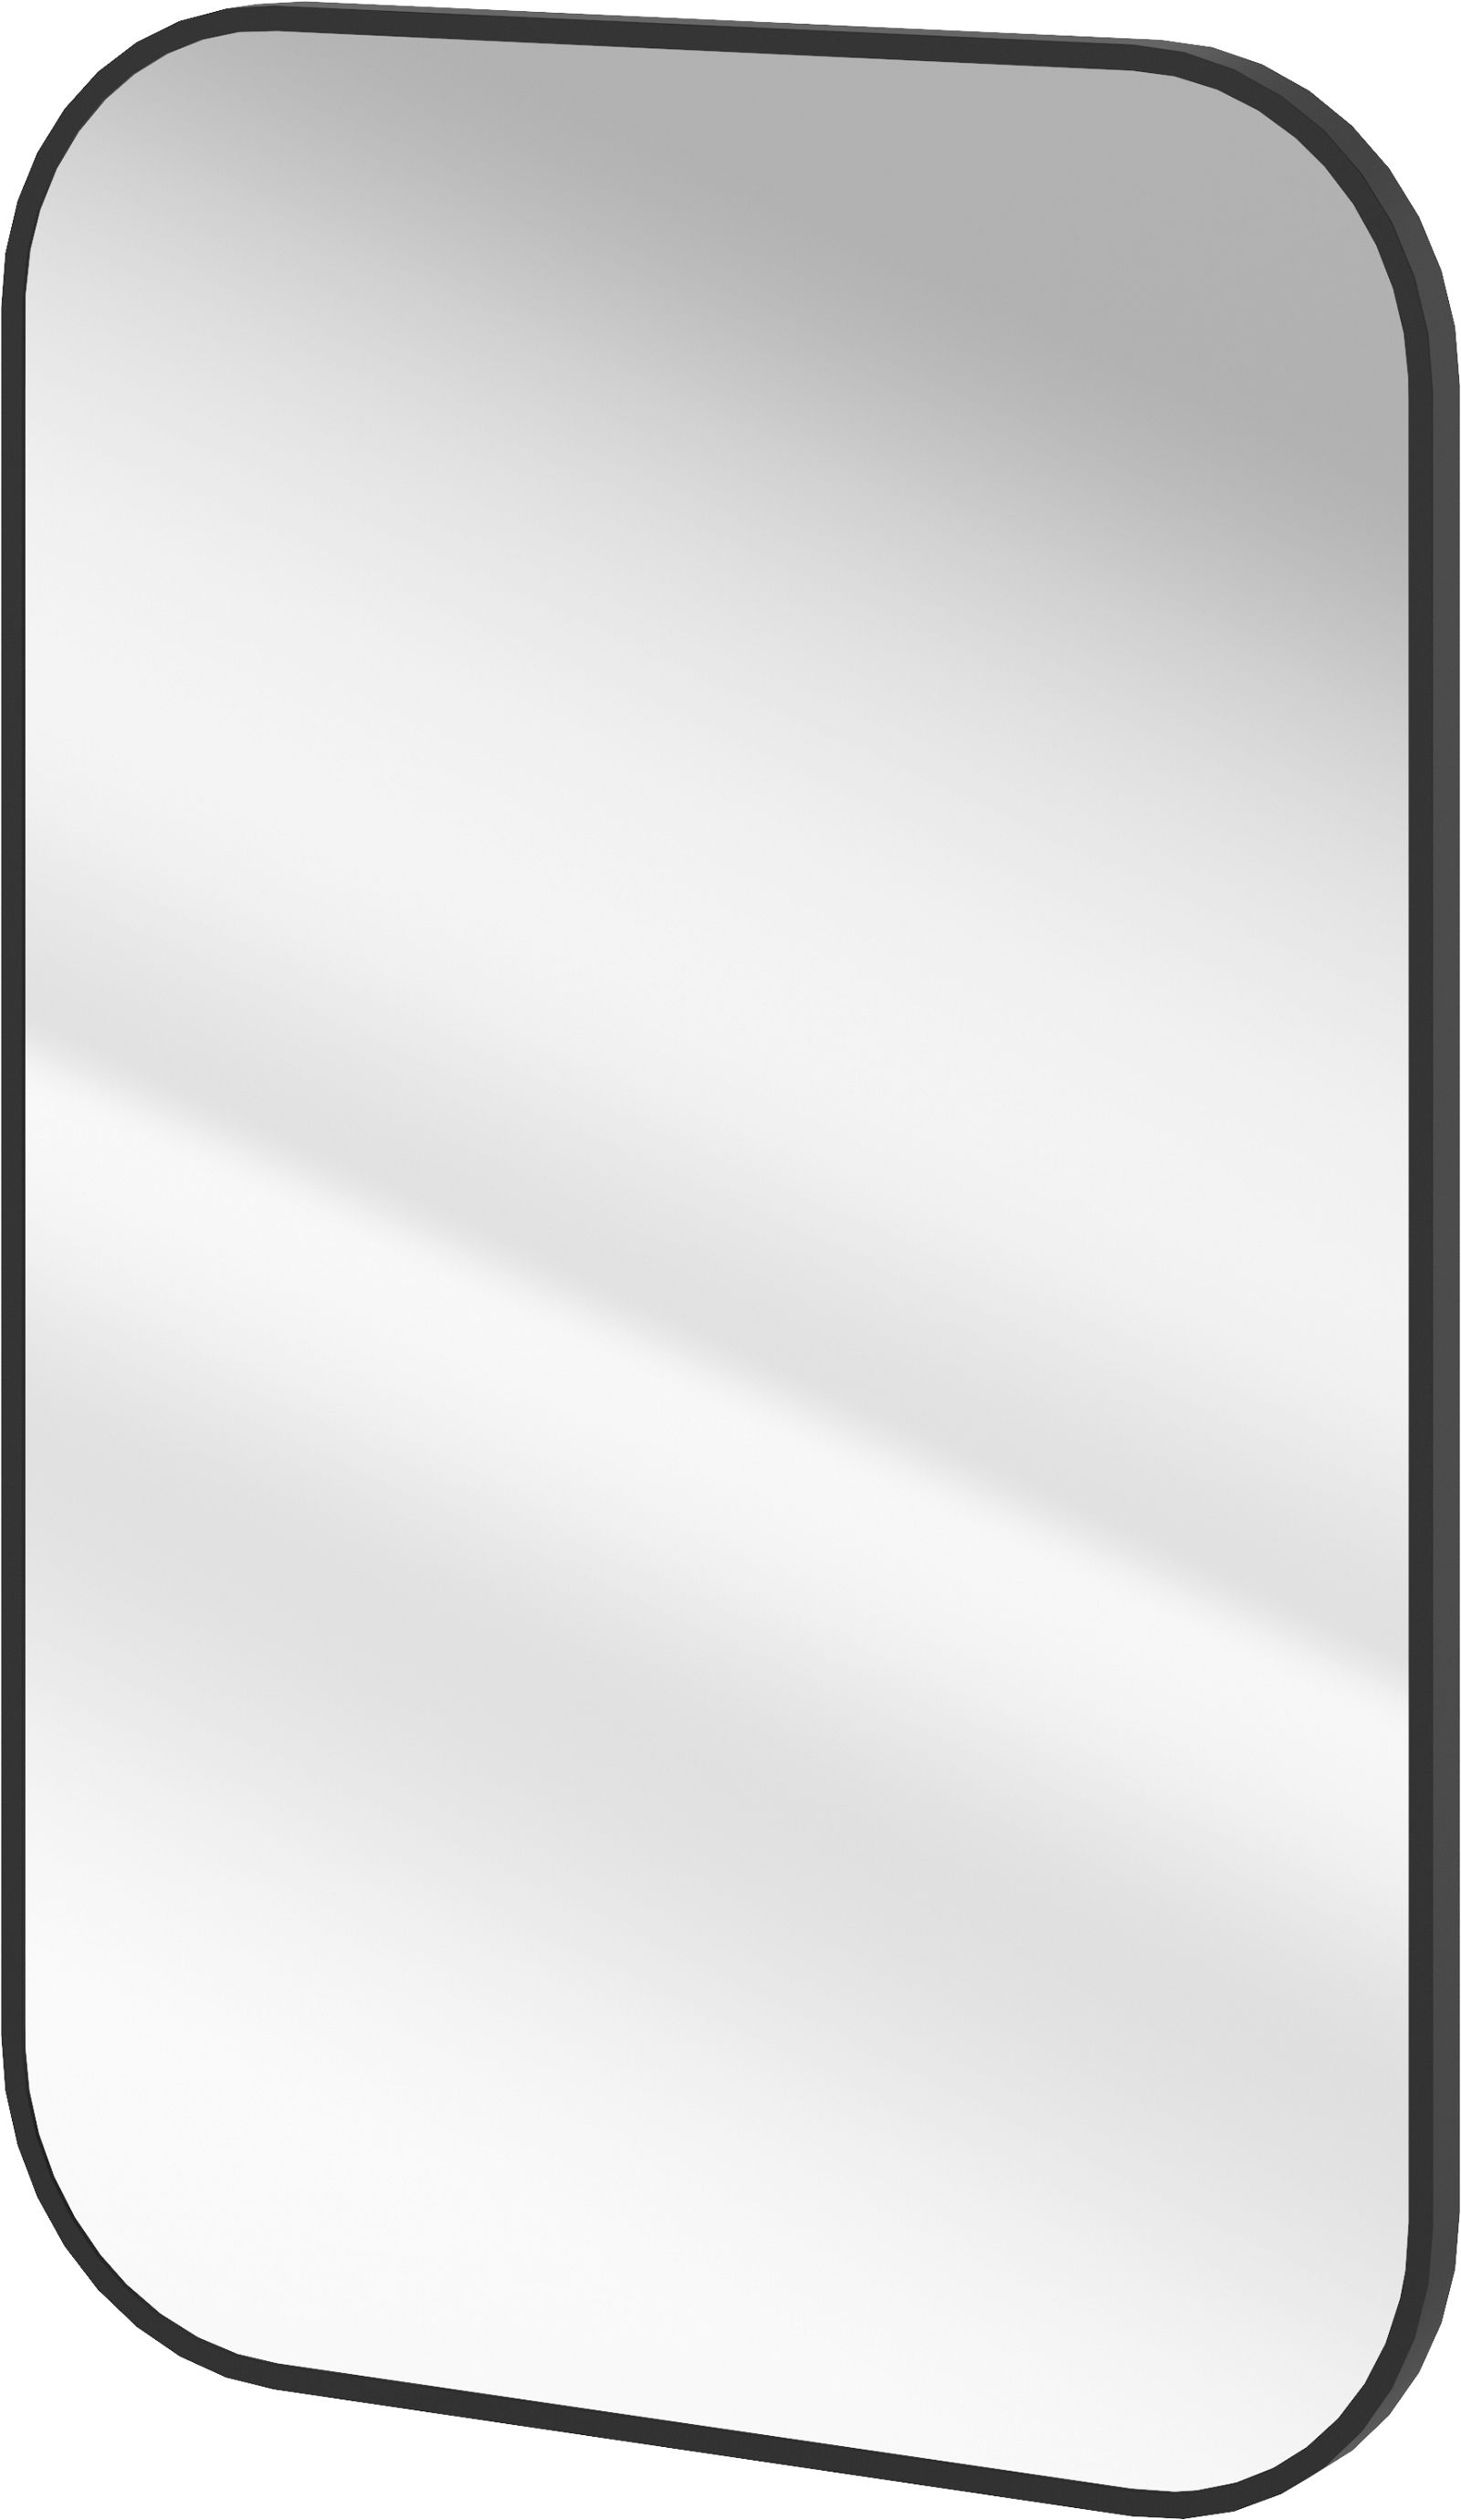 Hänge-spiegel, in einem Rahmen - rechteckig - ADM_N801 - Główne zdjęcie produktowe